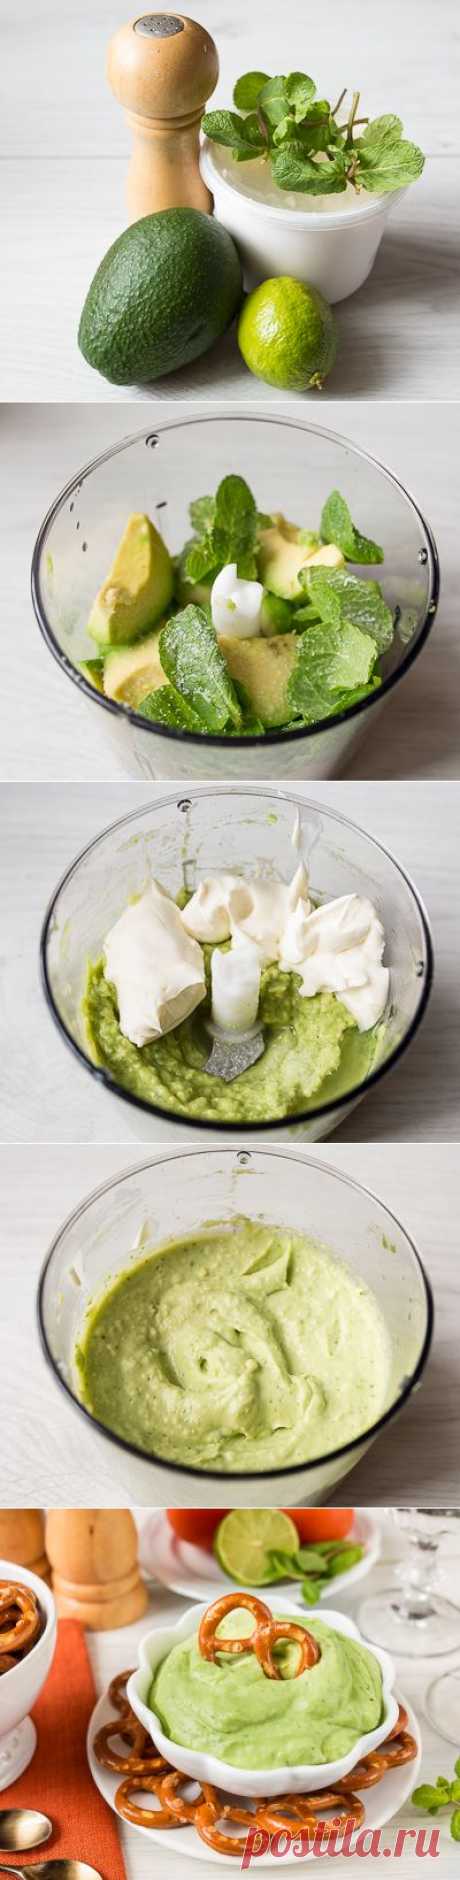 Дип из авокадо с мятой - Пошаговый рецепт с фото | Закуски | Соусы, дипы, приправы | Вкусный блог - рецепты под настроение